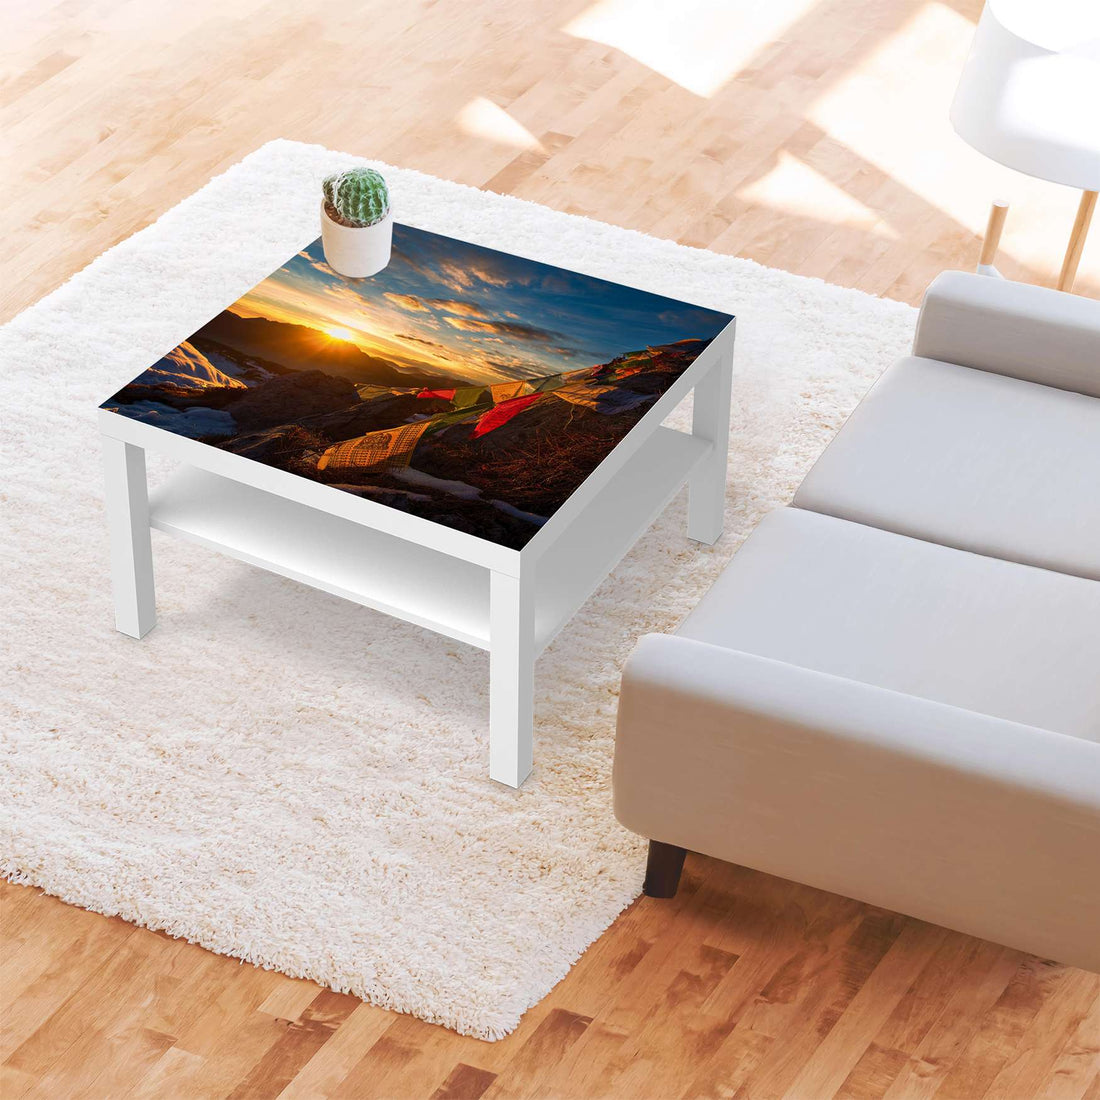 Selbstklebende Folie Tibet - IKEA Lack Tisch 78x78 cm - Wohnzimmer